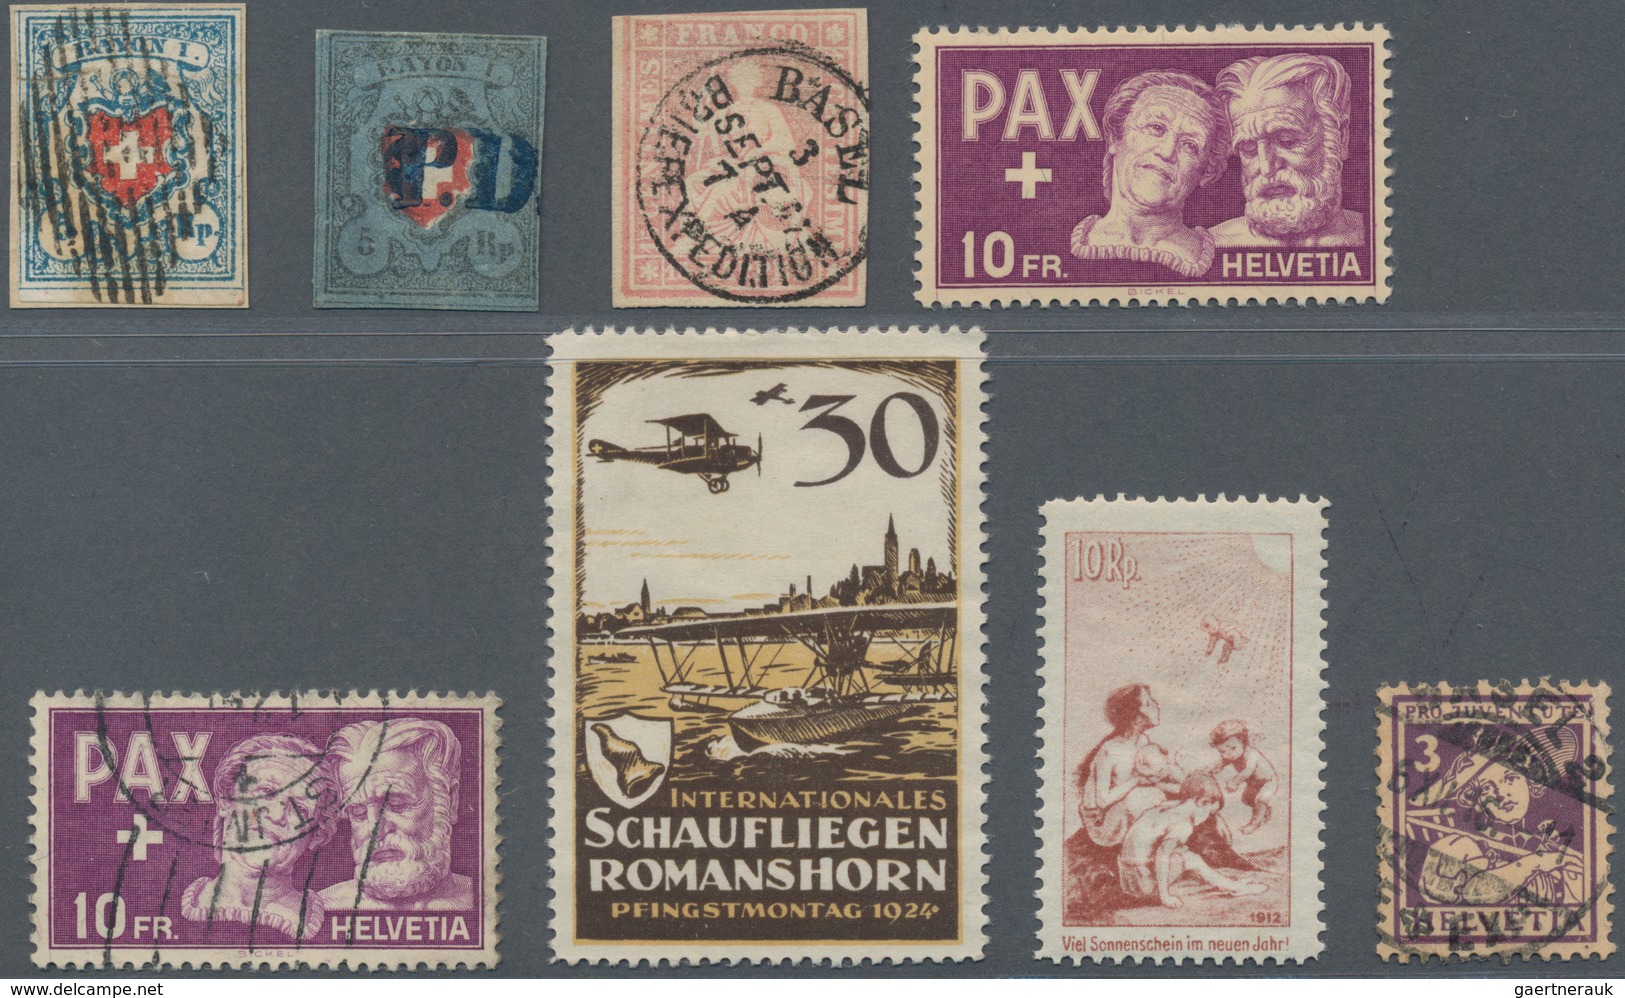 Schweiz: 1850/2005, Umfangreiche Sammlung Ab Rayon Und Strubel, Pax Postfrisch Und Gestempelt Pro Ju - Lotes/Colecciones